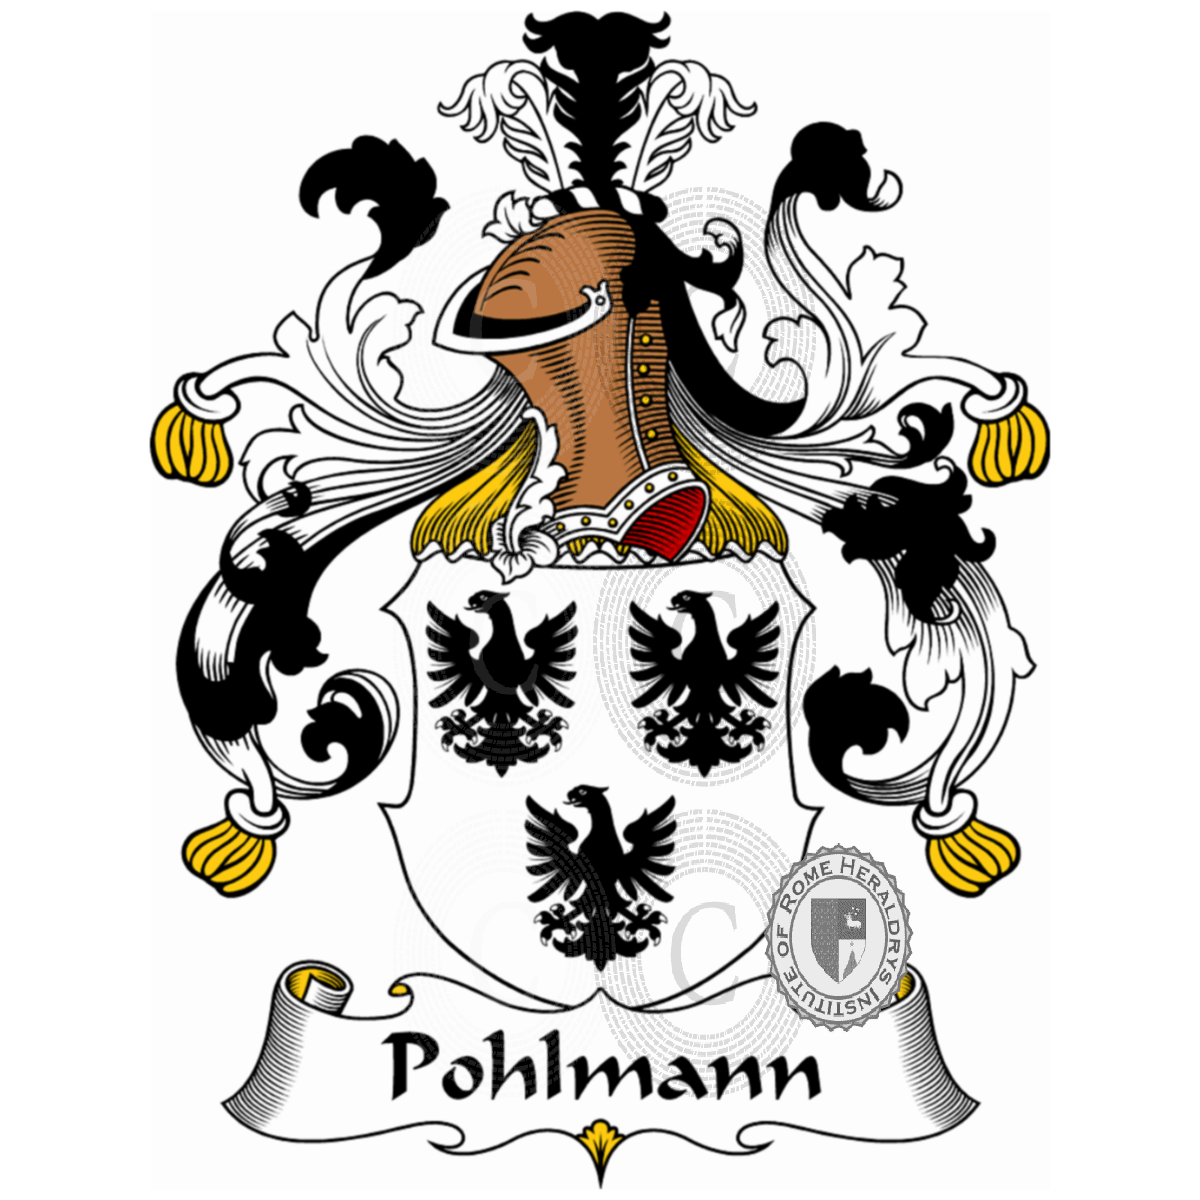 Brasão da famíliaPohlmann, Polemann